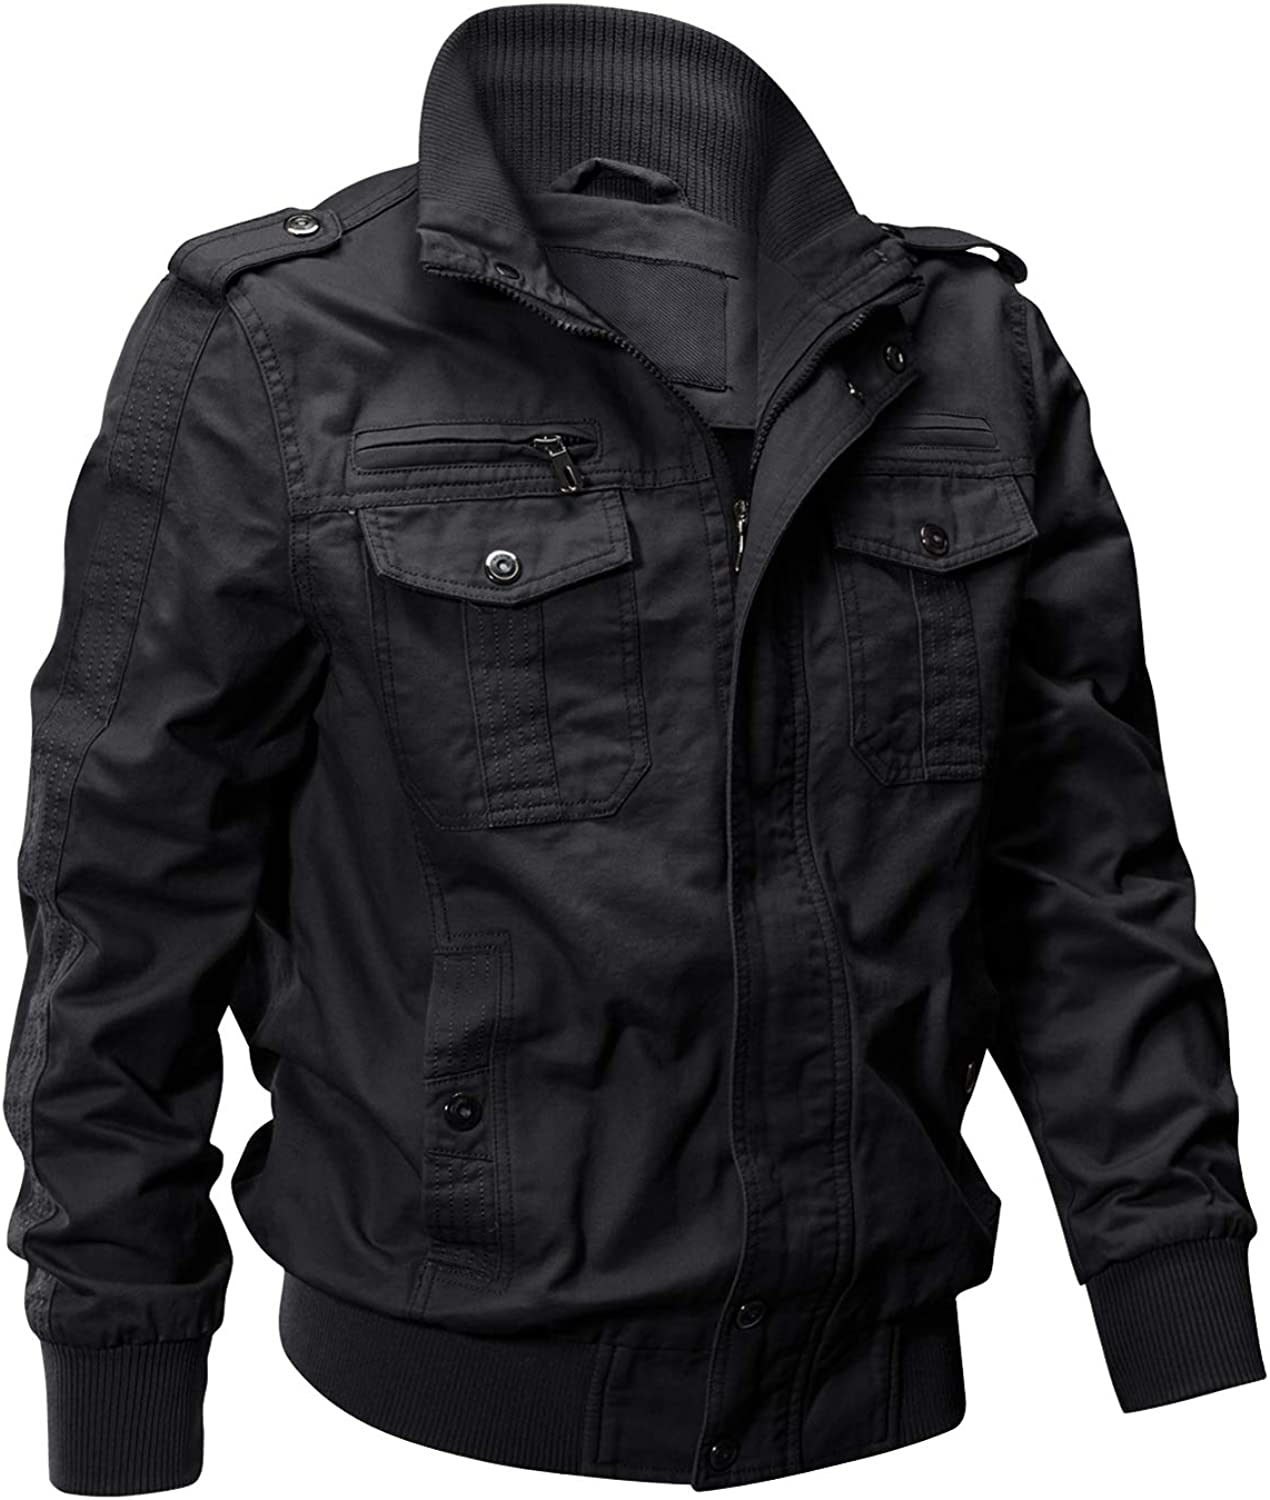 MAGCOMSEN Men's Hoodie Fleece Jacket 6 Zip-Pockets Warm Winter Jacket  Military Tactical Jacket